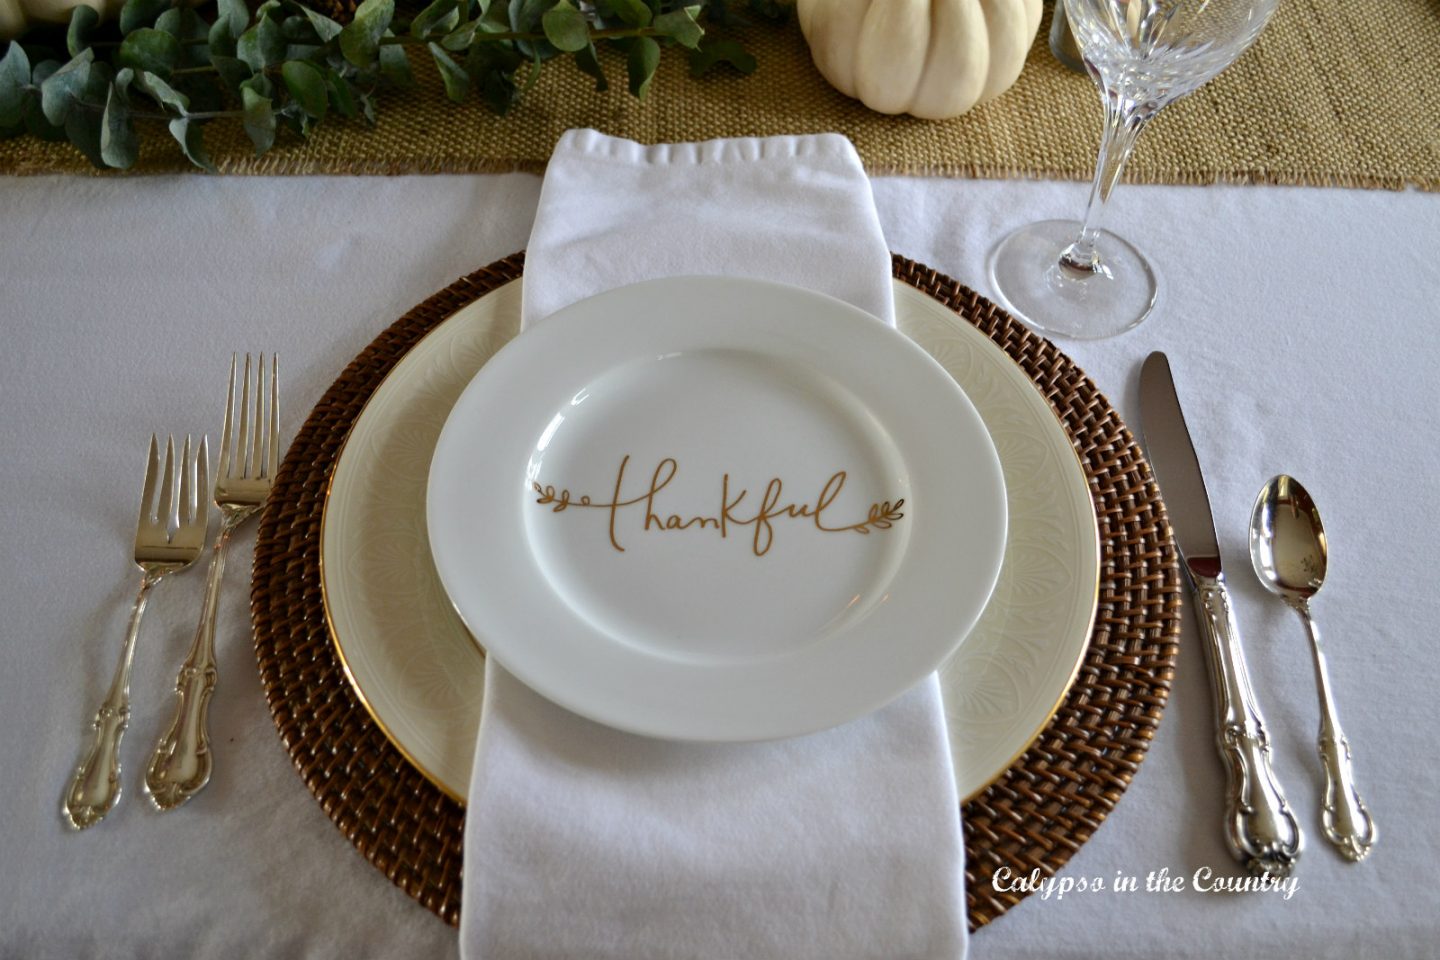 White napkins on Thanksgiving Table